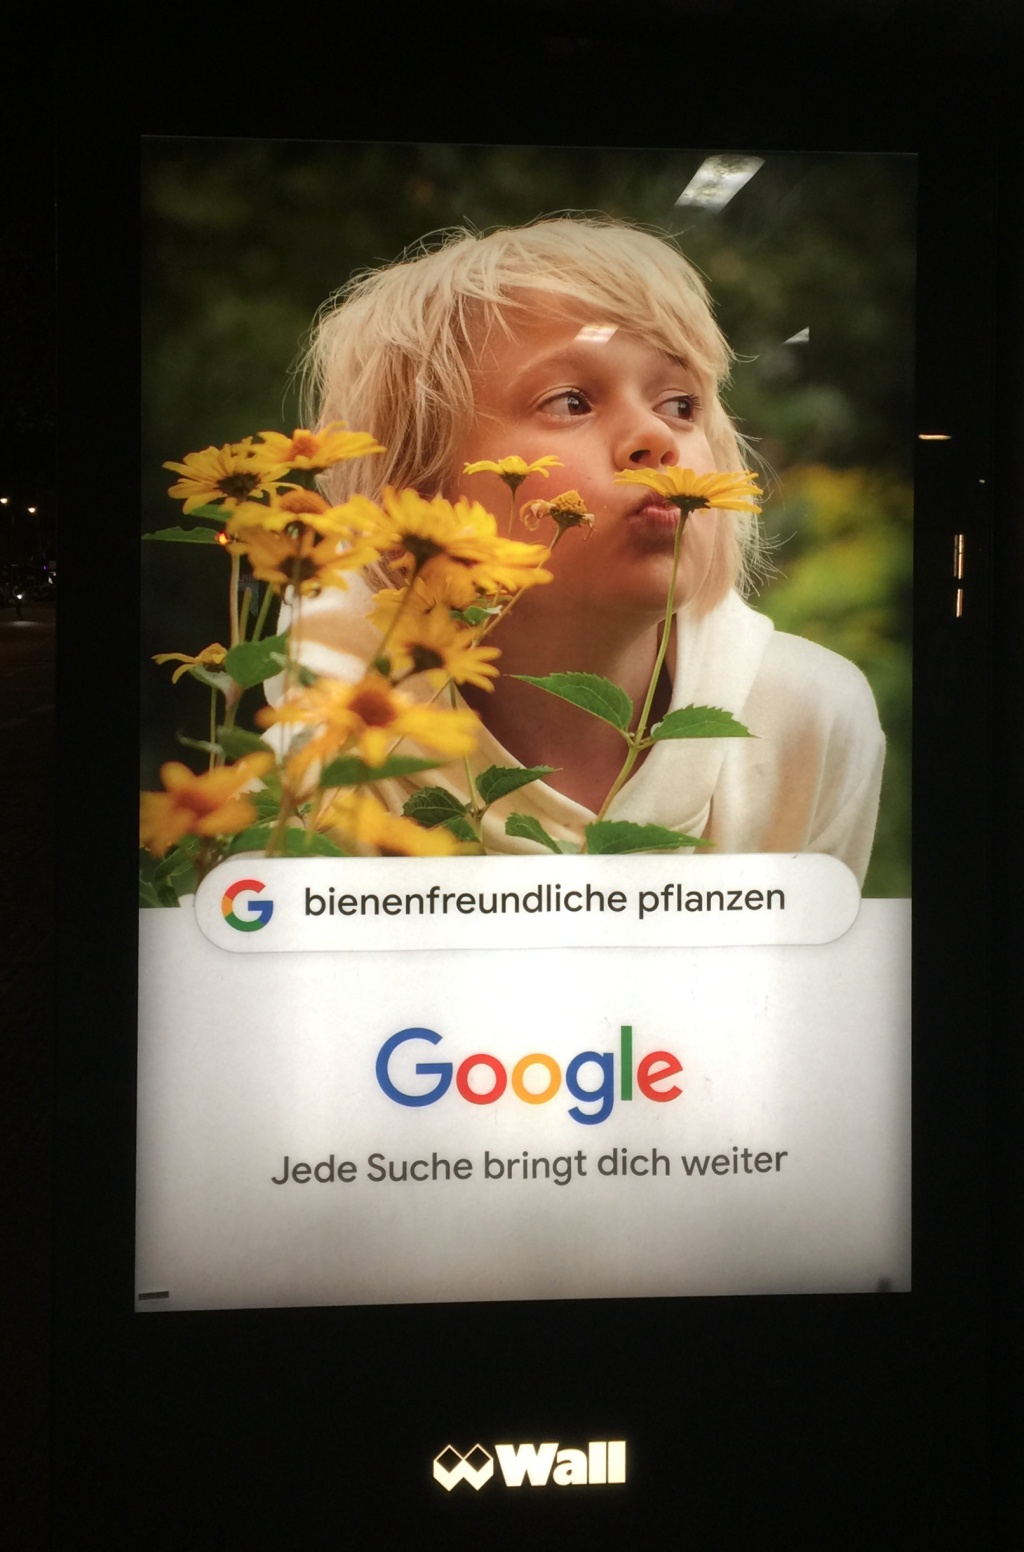 Google-Anzeige mit bienenfreundlichen Pflanzen